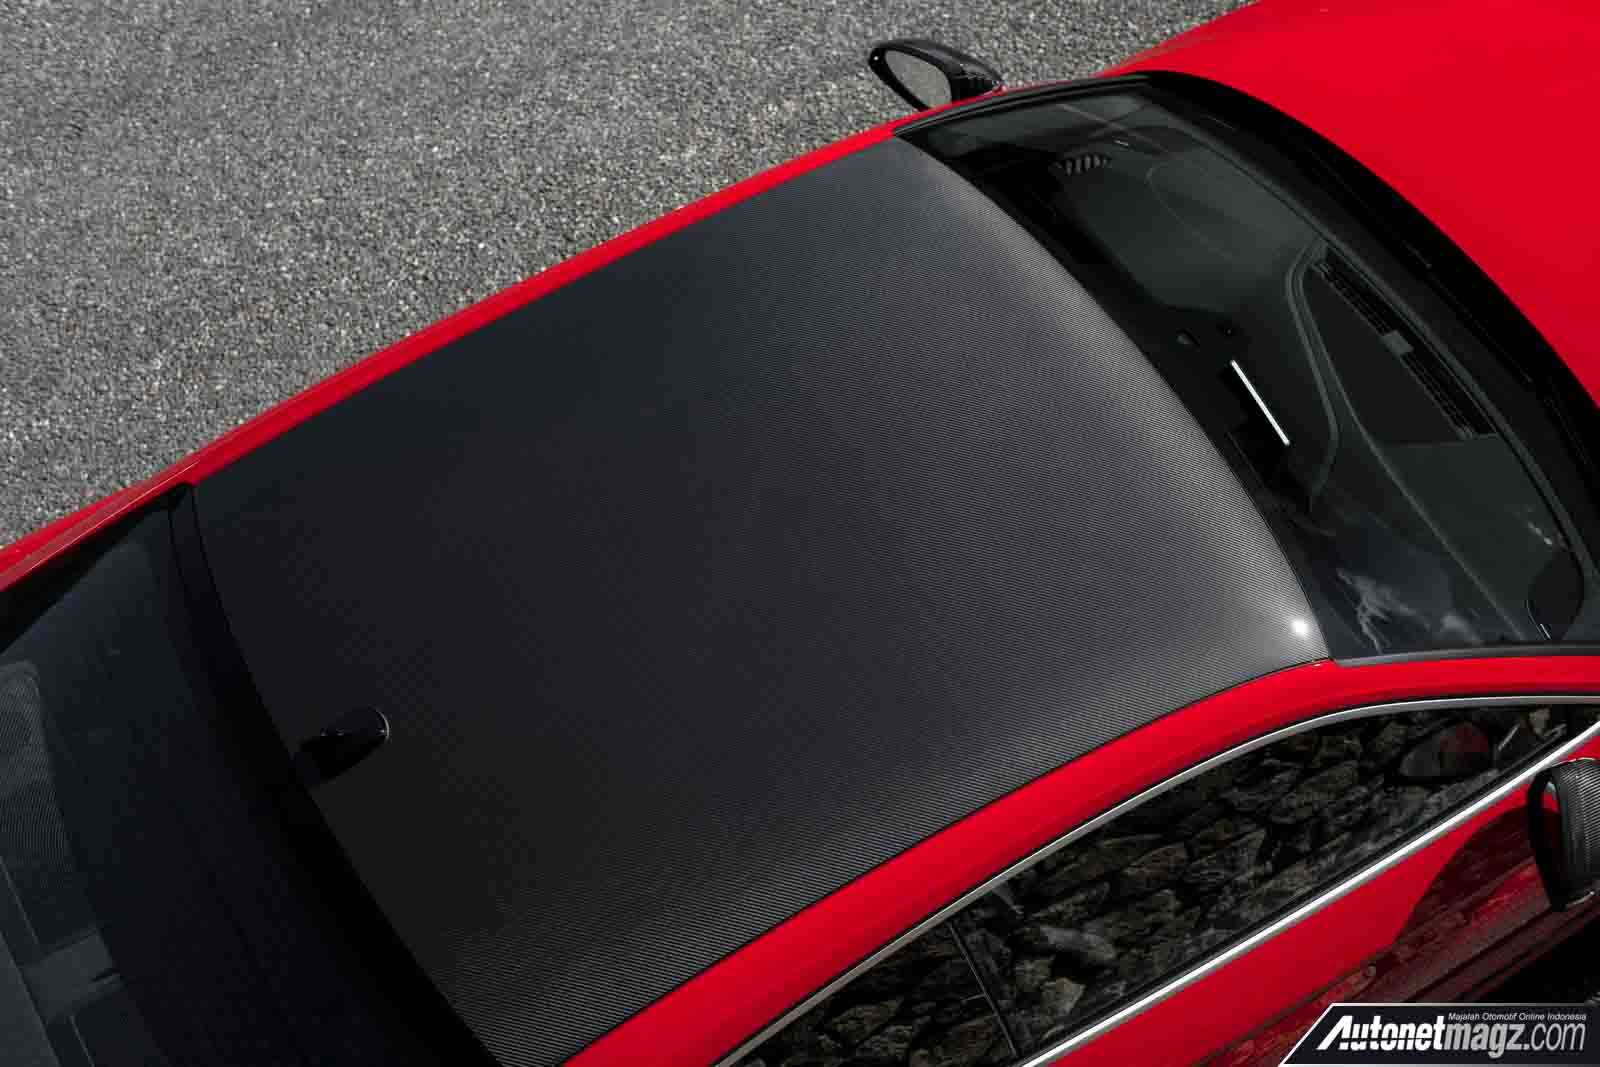 Audi, Atap CFRP Audi RS5 Coupe Carbon Edition: Carbon Edition Hadir Pada Audi RS4 Avant & RS5 Coupe